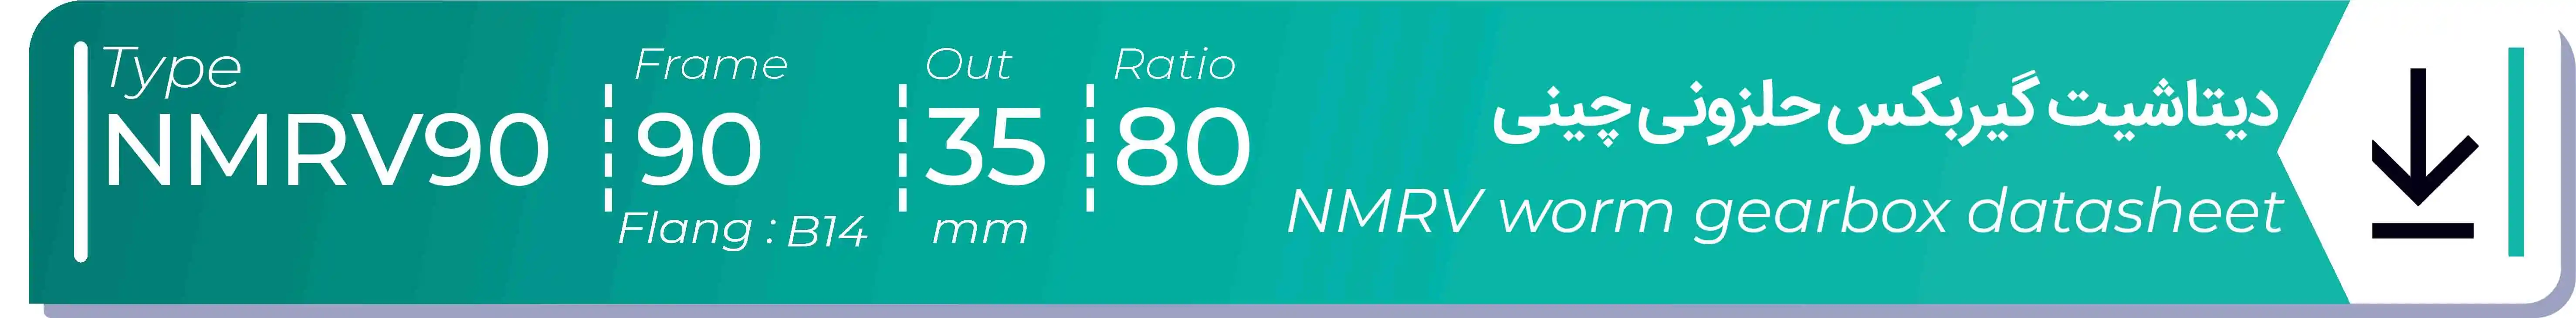  دیتاشیت و مشخصات فنی گیربکس حلزونی چینی   NMRV90  -  با خروجی 35- میلی متر و نسبت80 و فریم 90